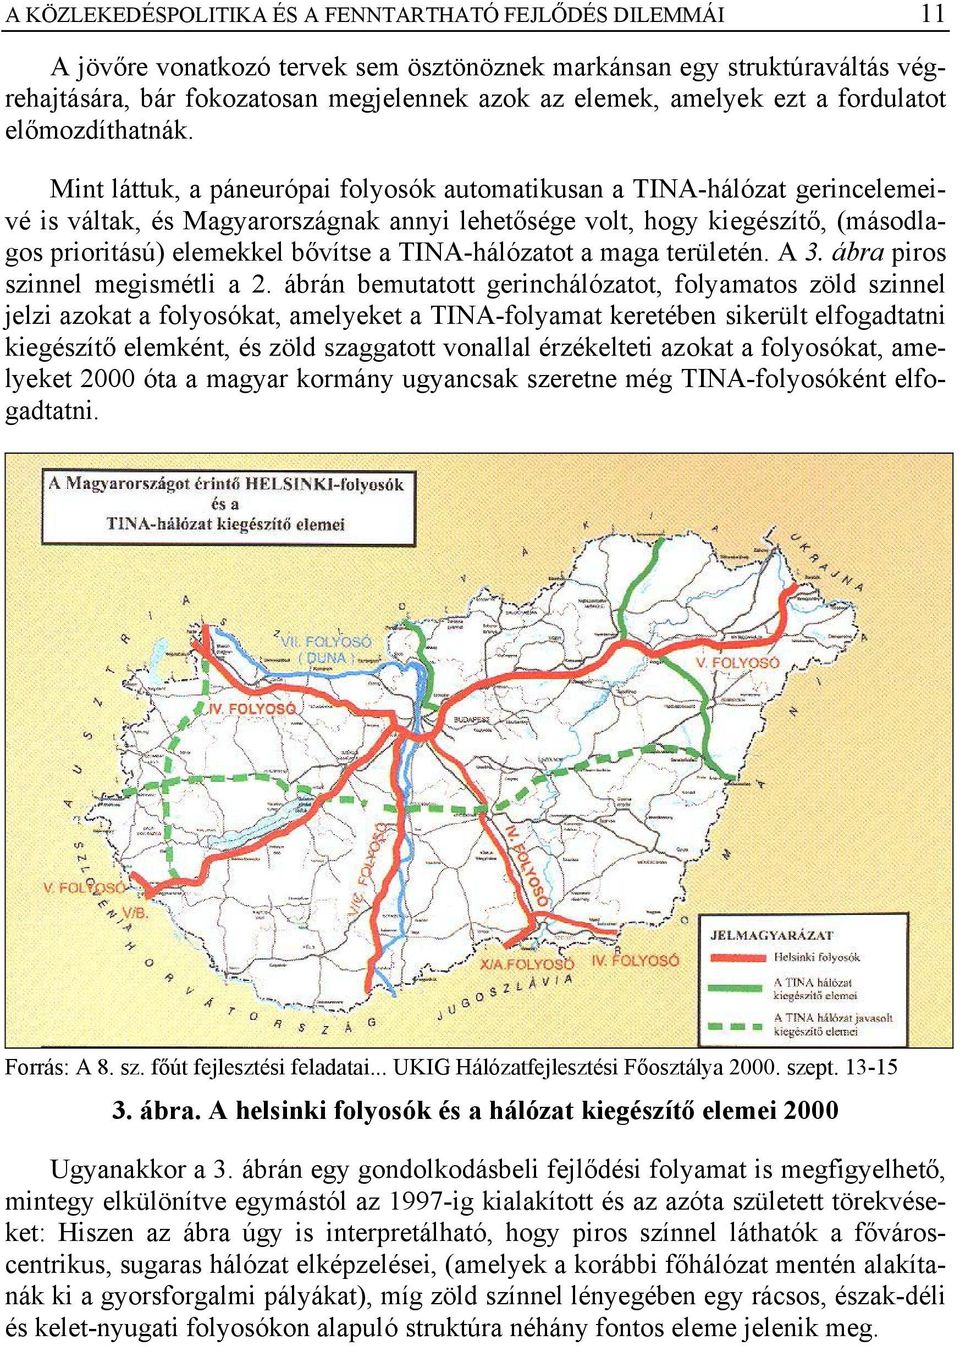 Mint láttuk, a páneurópai folyosók automatikusan a TINA-hálózat gerincelemeivé is váltak, és Magyarországnak annyi lehetősége volt, hogy kiegészítő, (másodlagos prioritású) elemekkel bővítse a